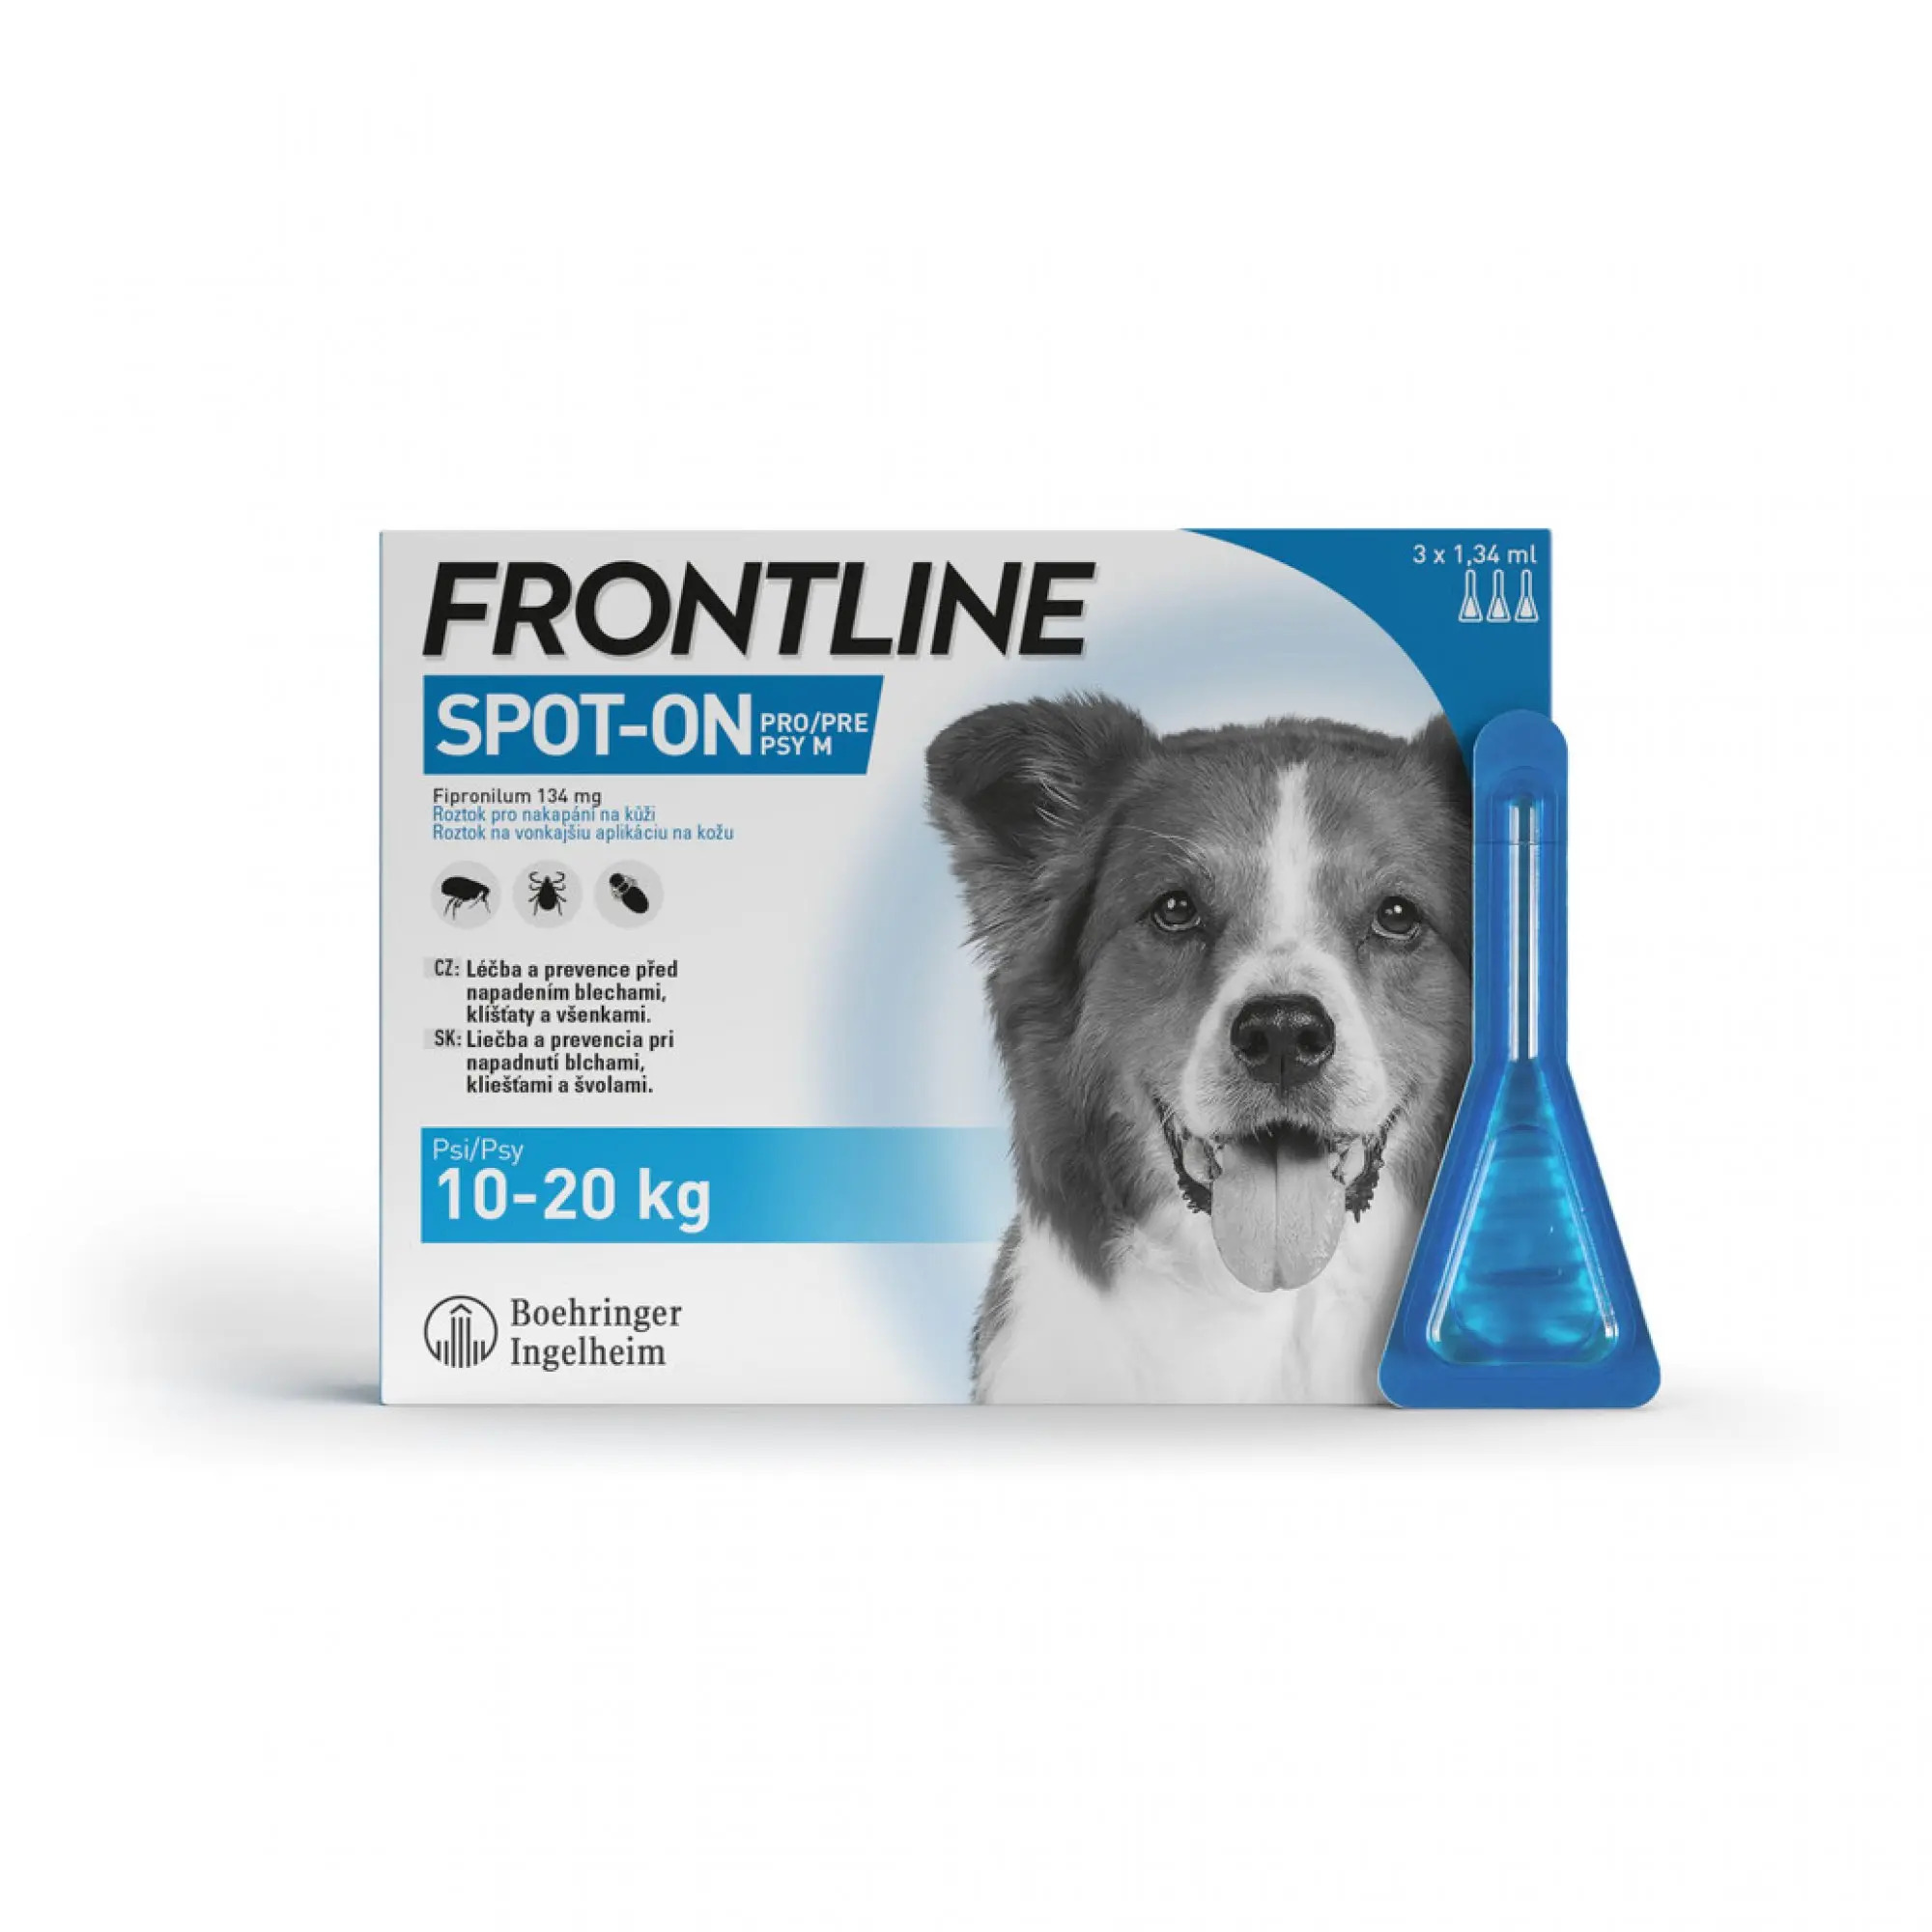 Frontline Spot-on pro psy M 10-20 kg 3 x 1,34 ml